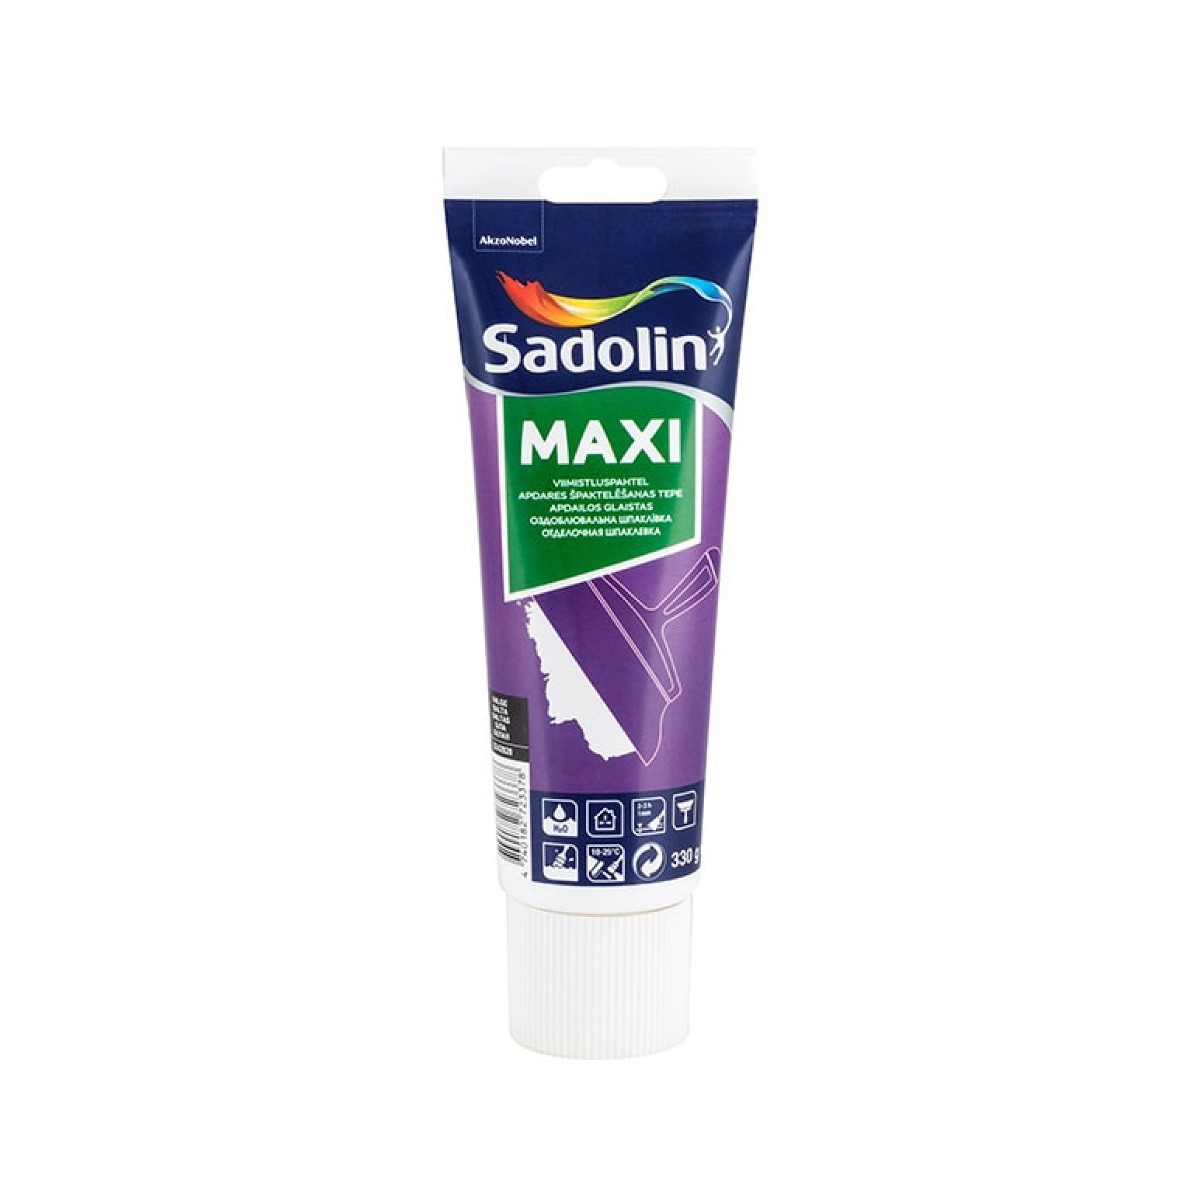 Sadolin Maxi smalkgraudaina špaktelēšanas tepe, balta, 0.33L